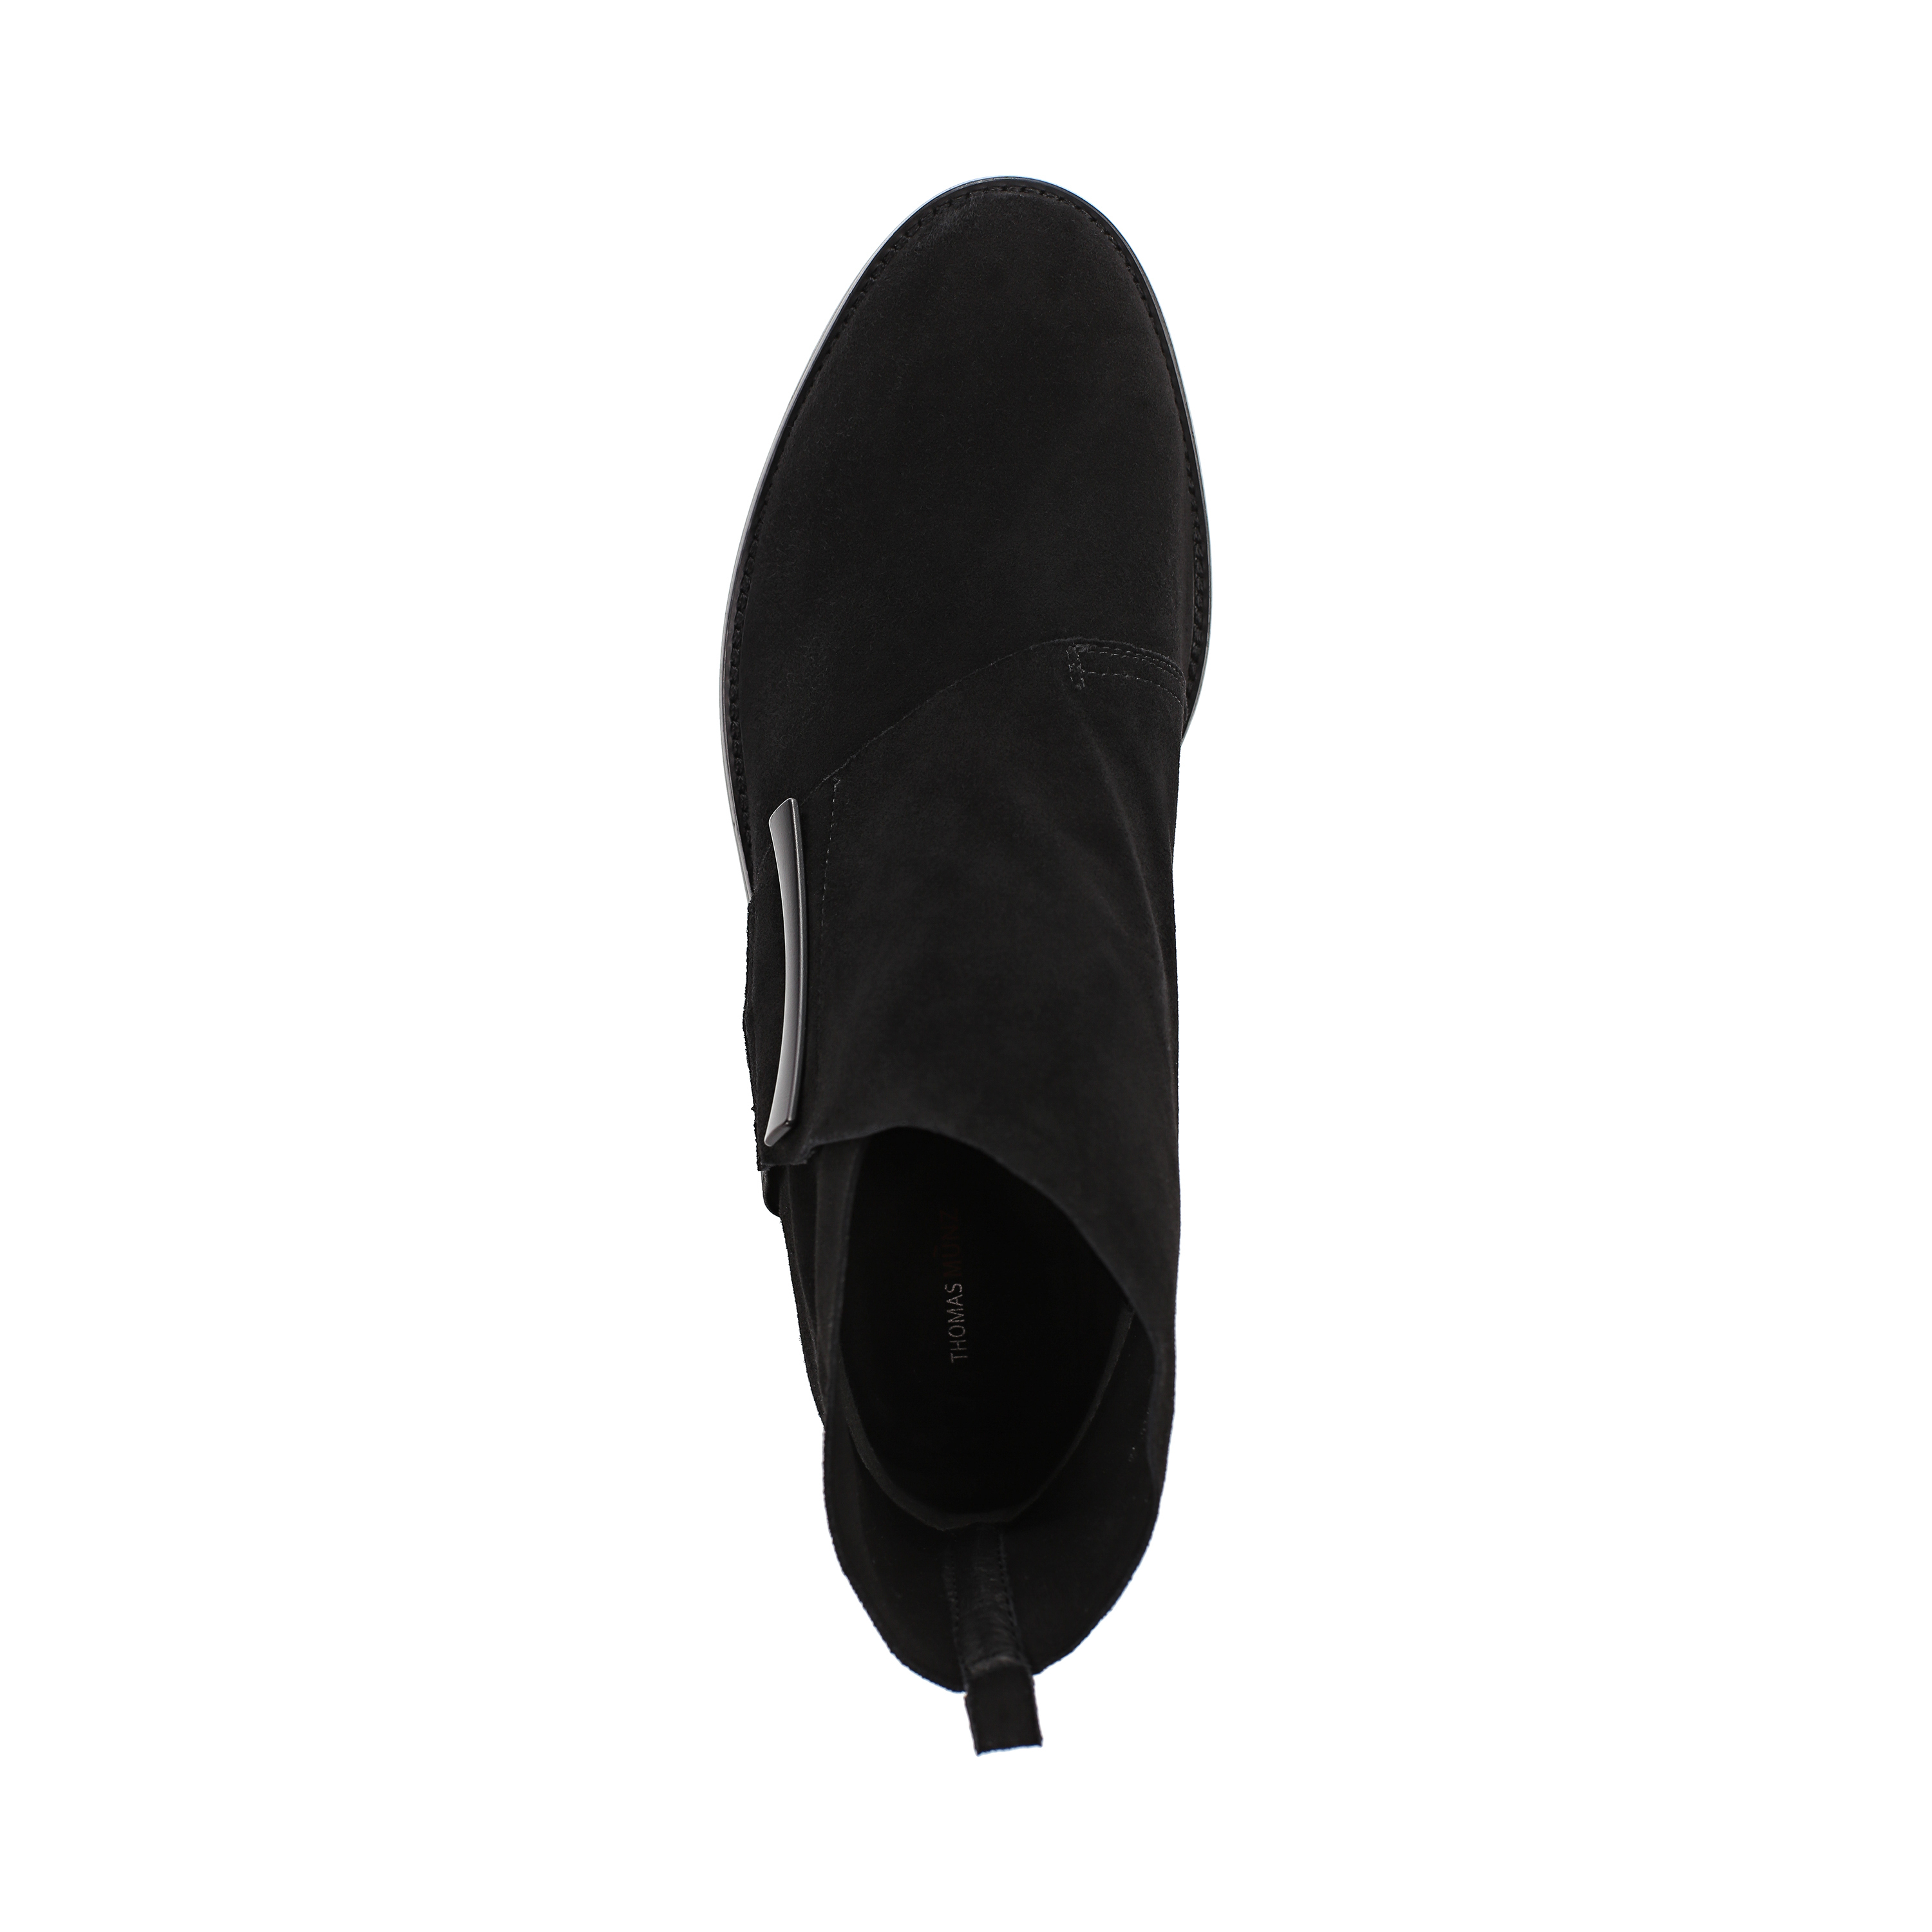 Ботинки Thomas Munz 126-185A-10602, цвет черный, размер 40 - фото 5